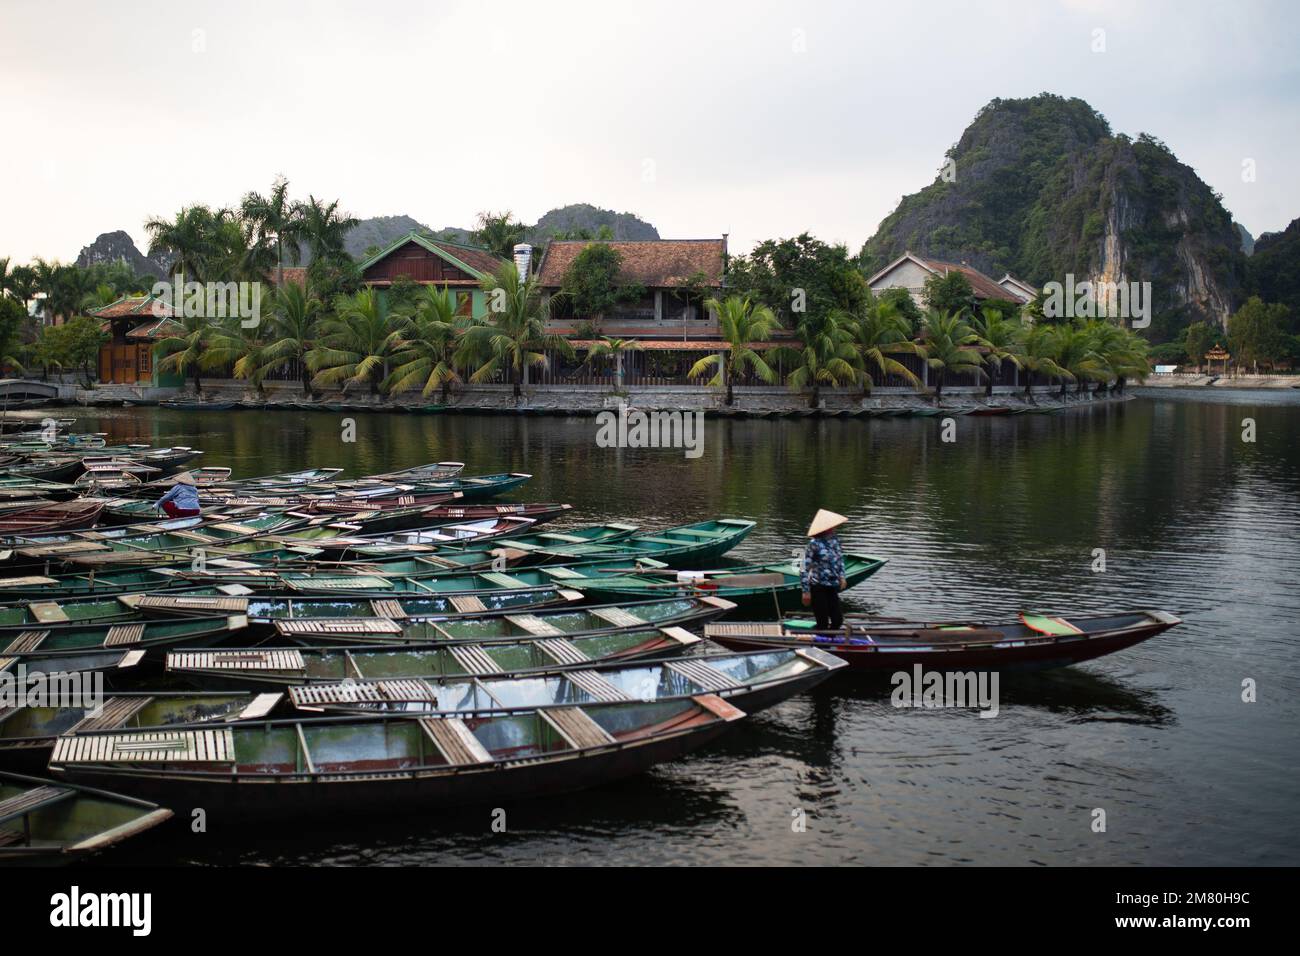 Boote zum Verleih in einer Reihe in Ninh Binh, einer beliebten touristischen Aktivität. - Ninh Binh, Vietnam Stockfoto